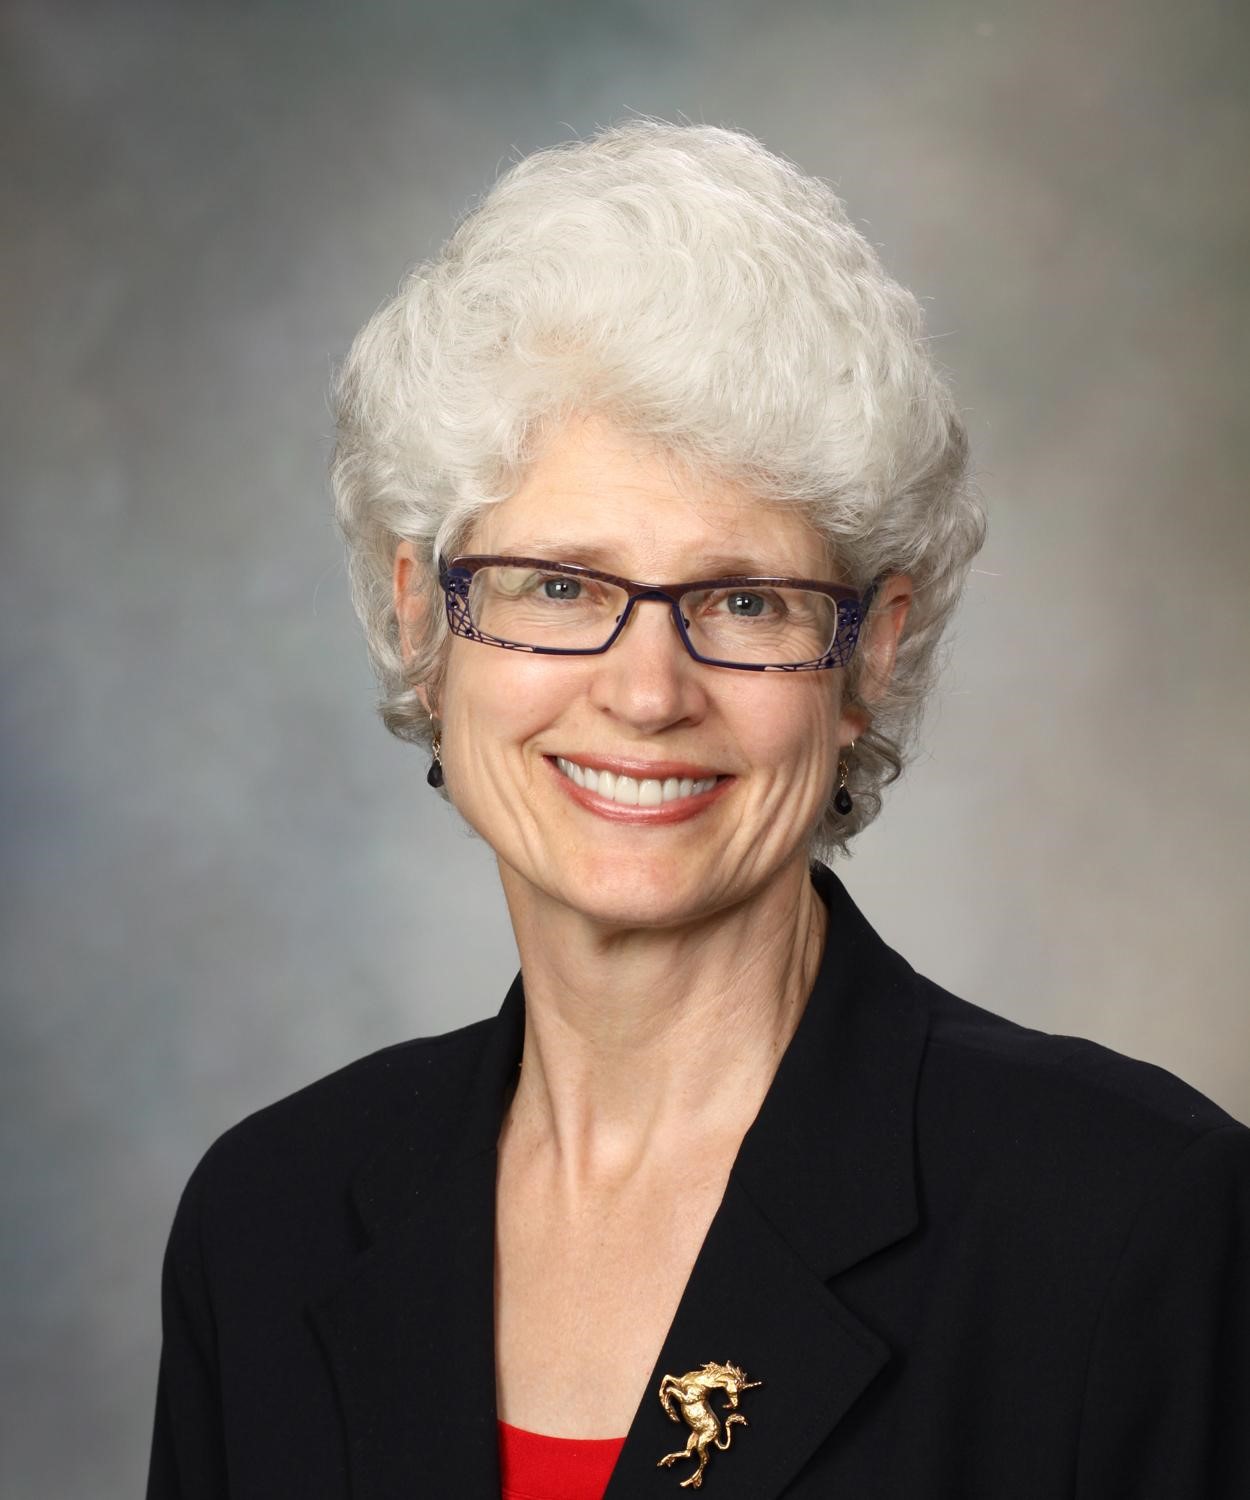 Dr. Denise Wedel